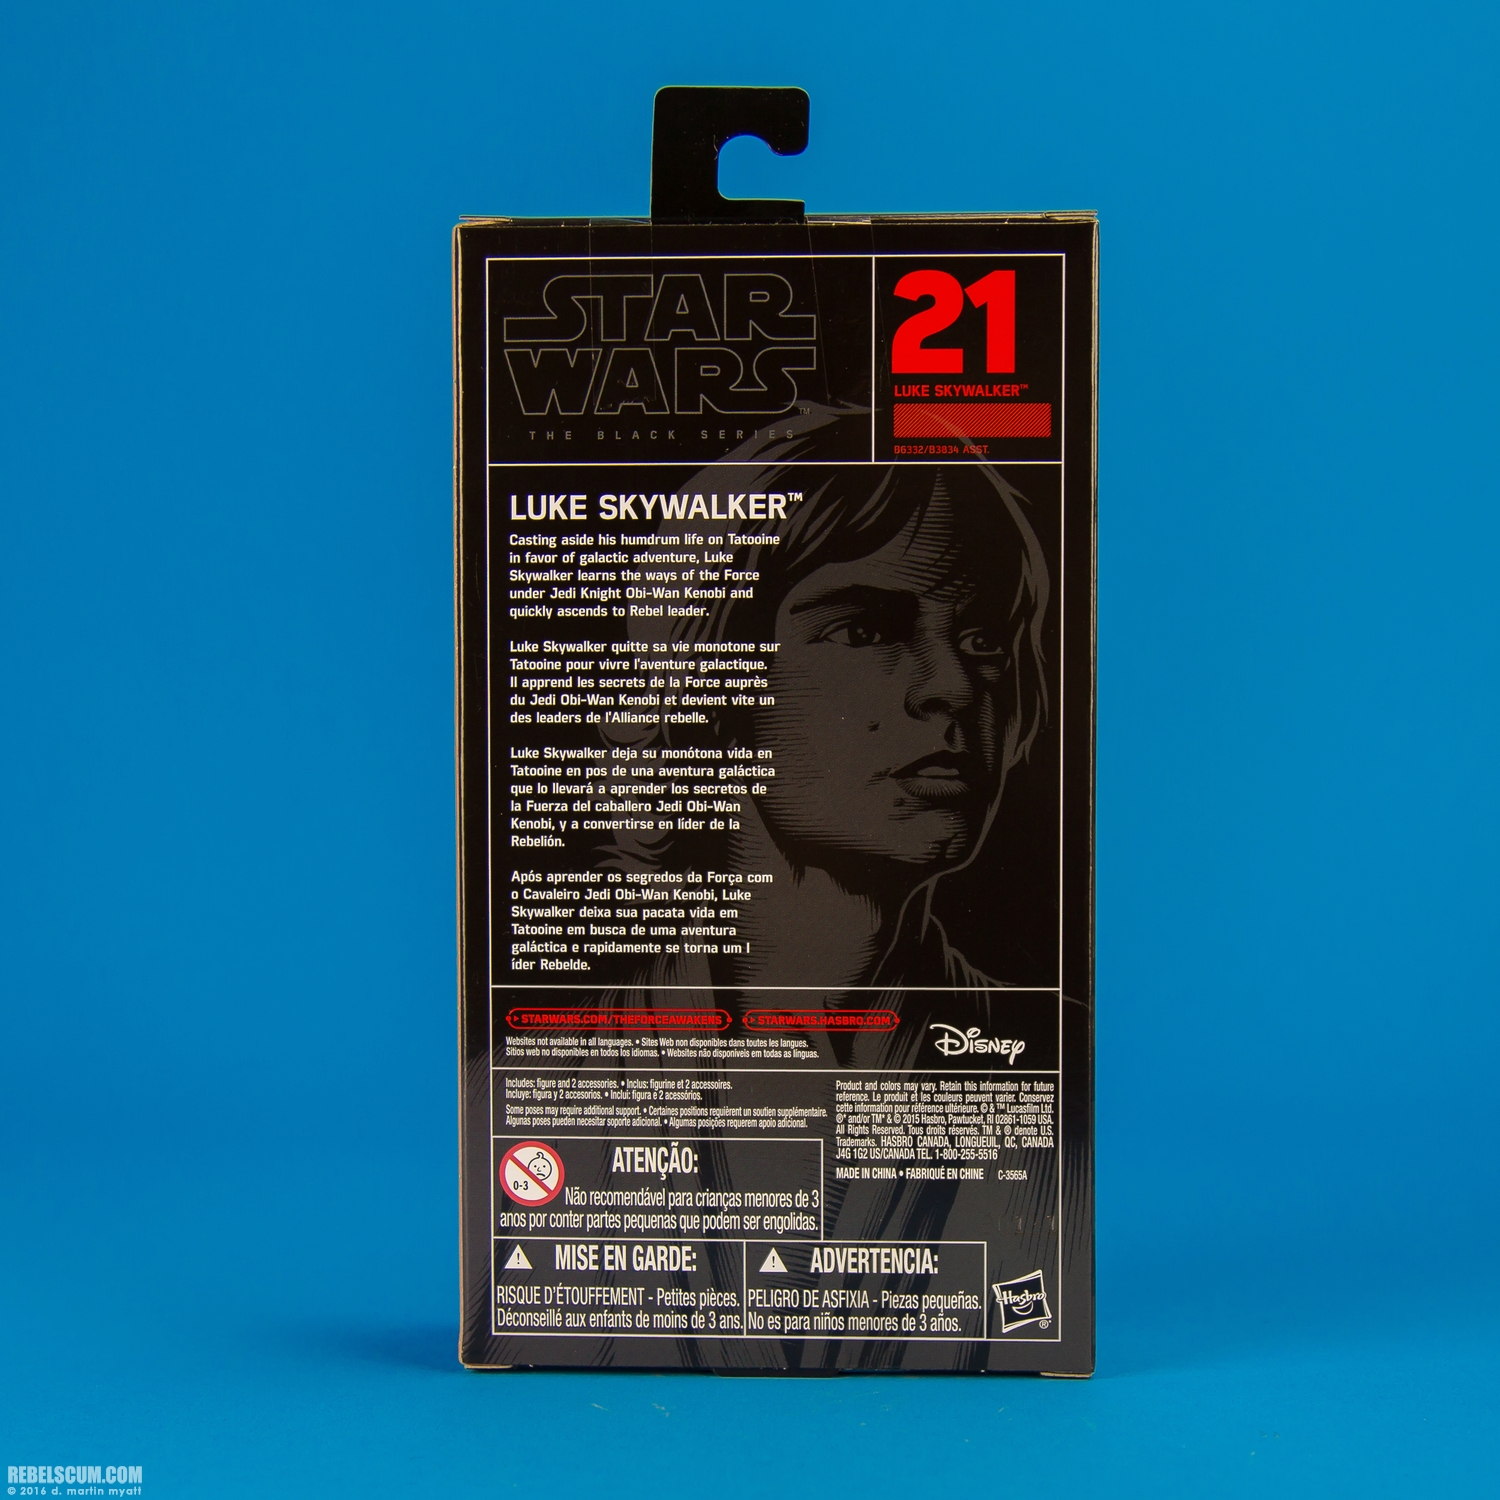 Luke-Skywalker-21-The-Black-Series-Star-Wars-Rebels-Hasbro-017.jpg